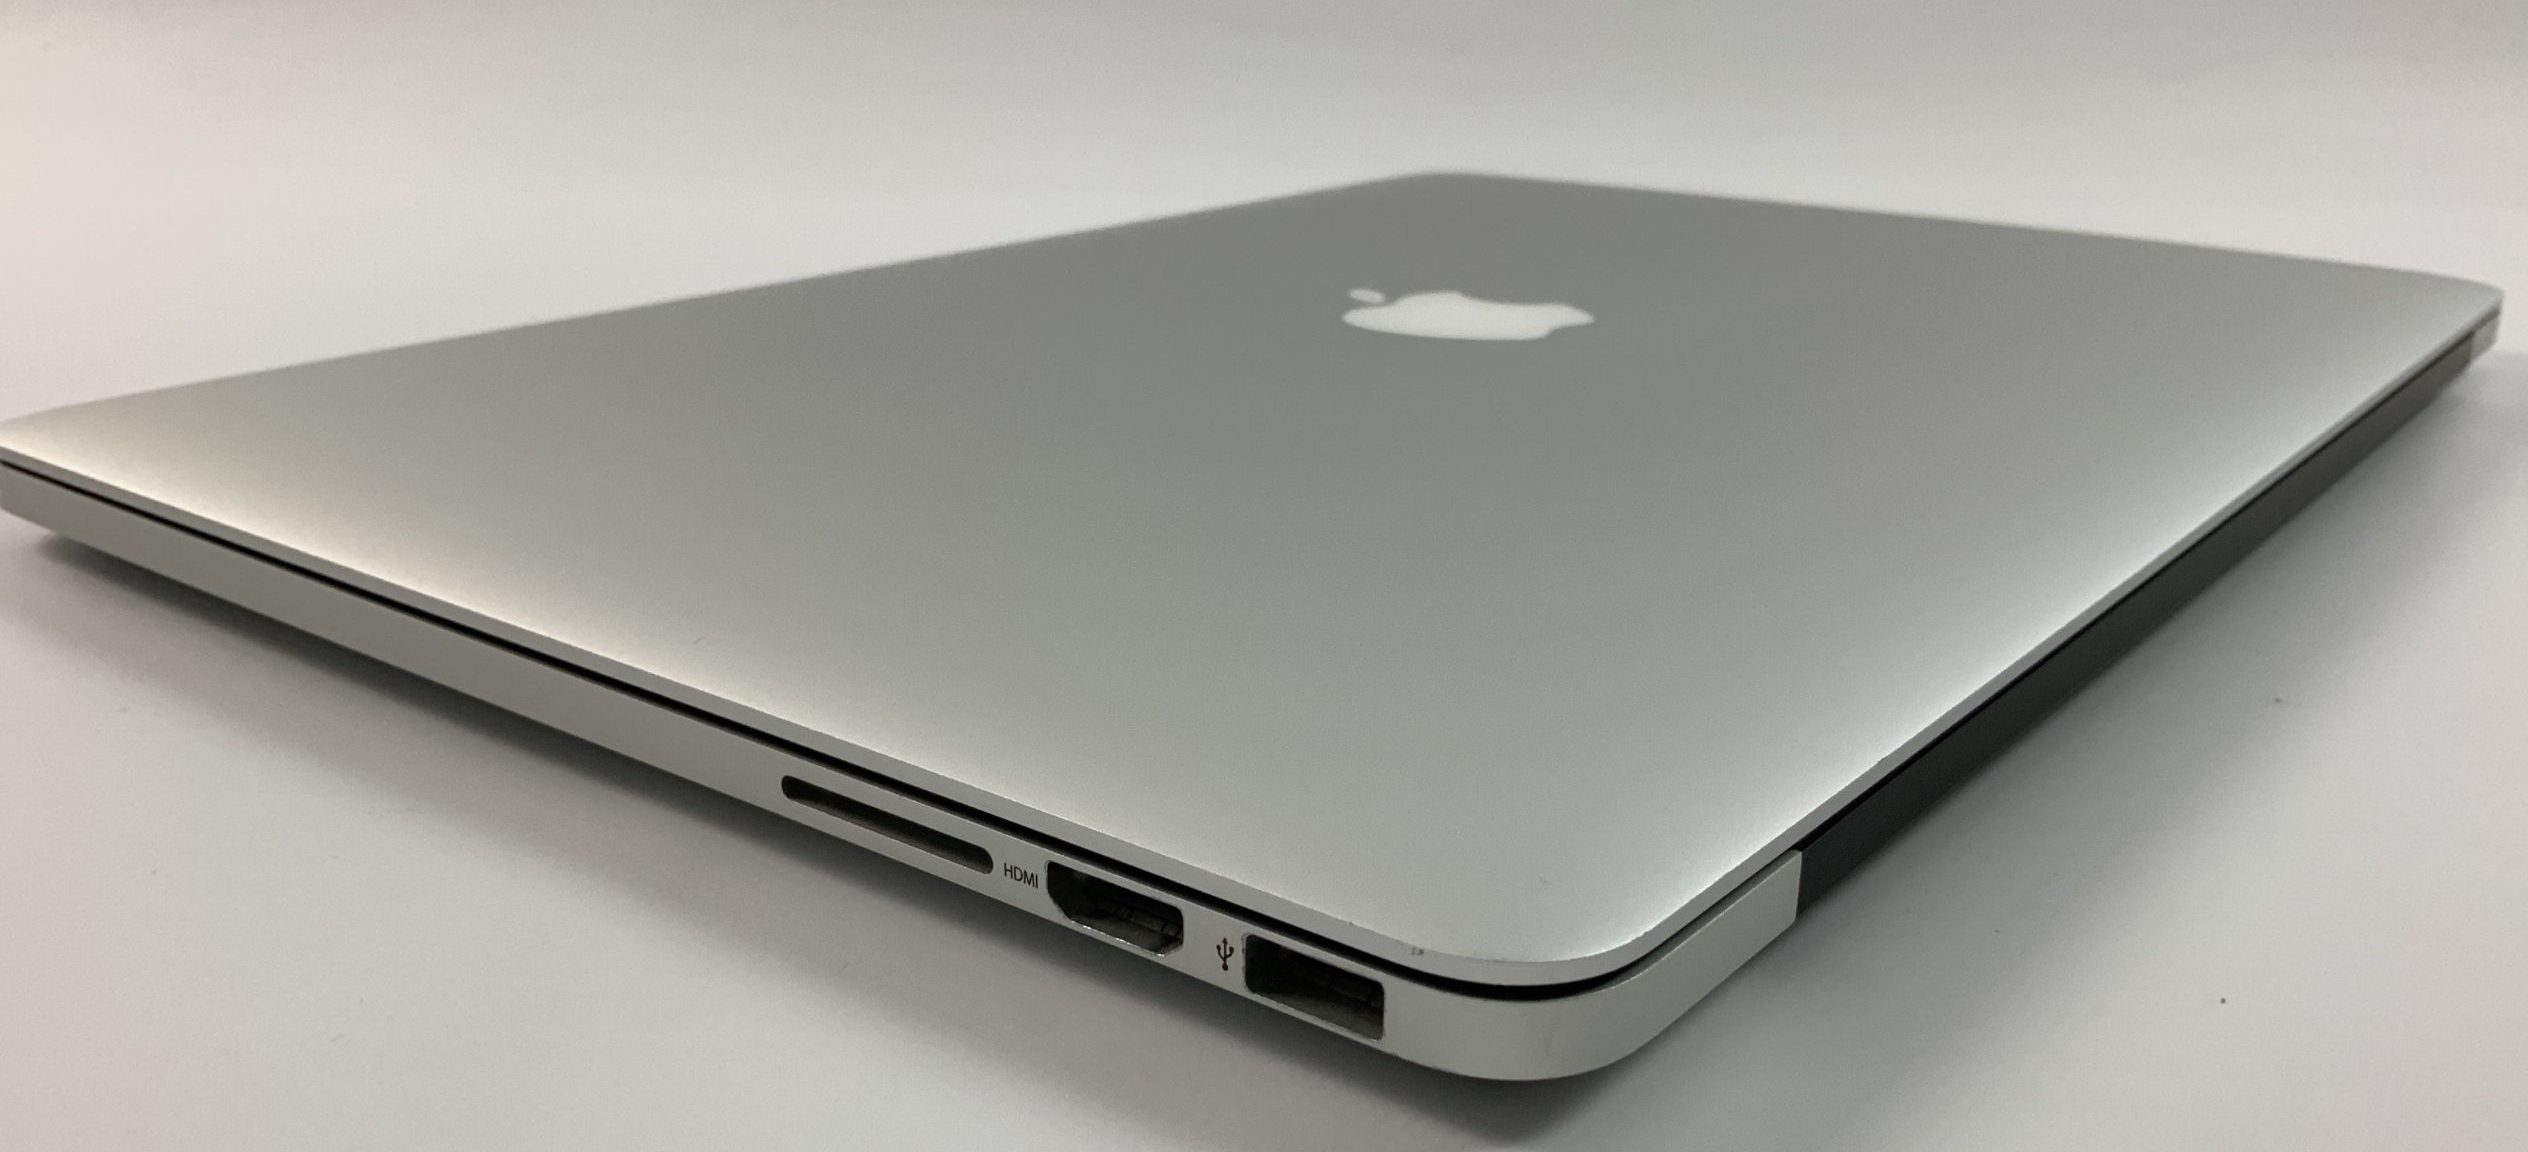 MacBook Pro Retina 15" Mid 2014 (Intel Quad-Core i7 2.5 GHz 16 GB RAM 512 GB SSD), Intel Quad-Core i7 2.5 GHz, 16 GB RAM, 512 GB SSD, Kuva 3